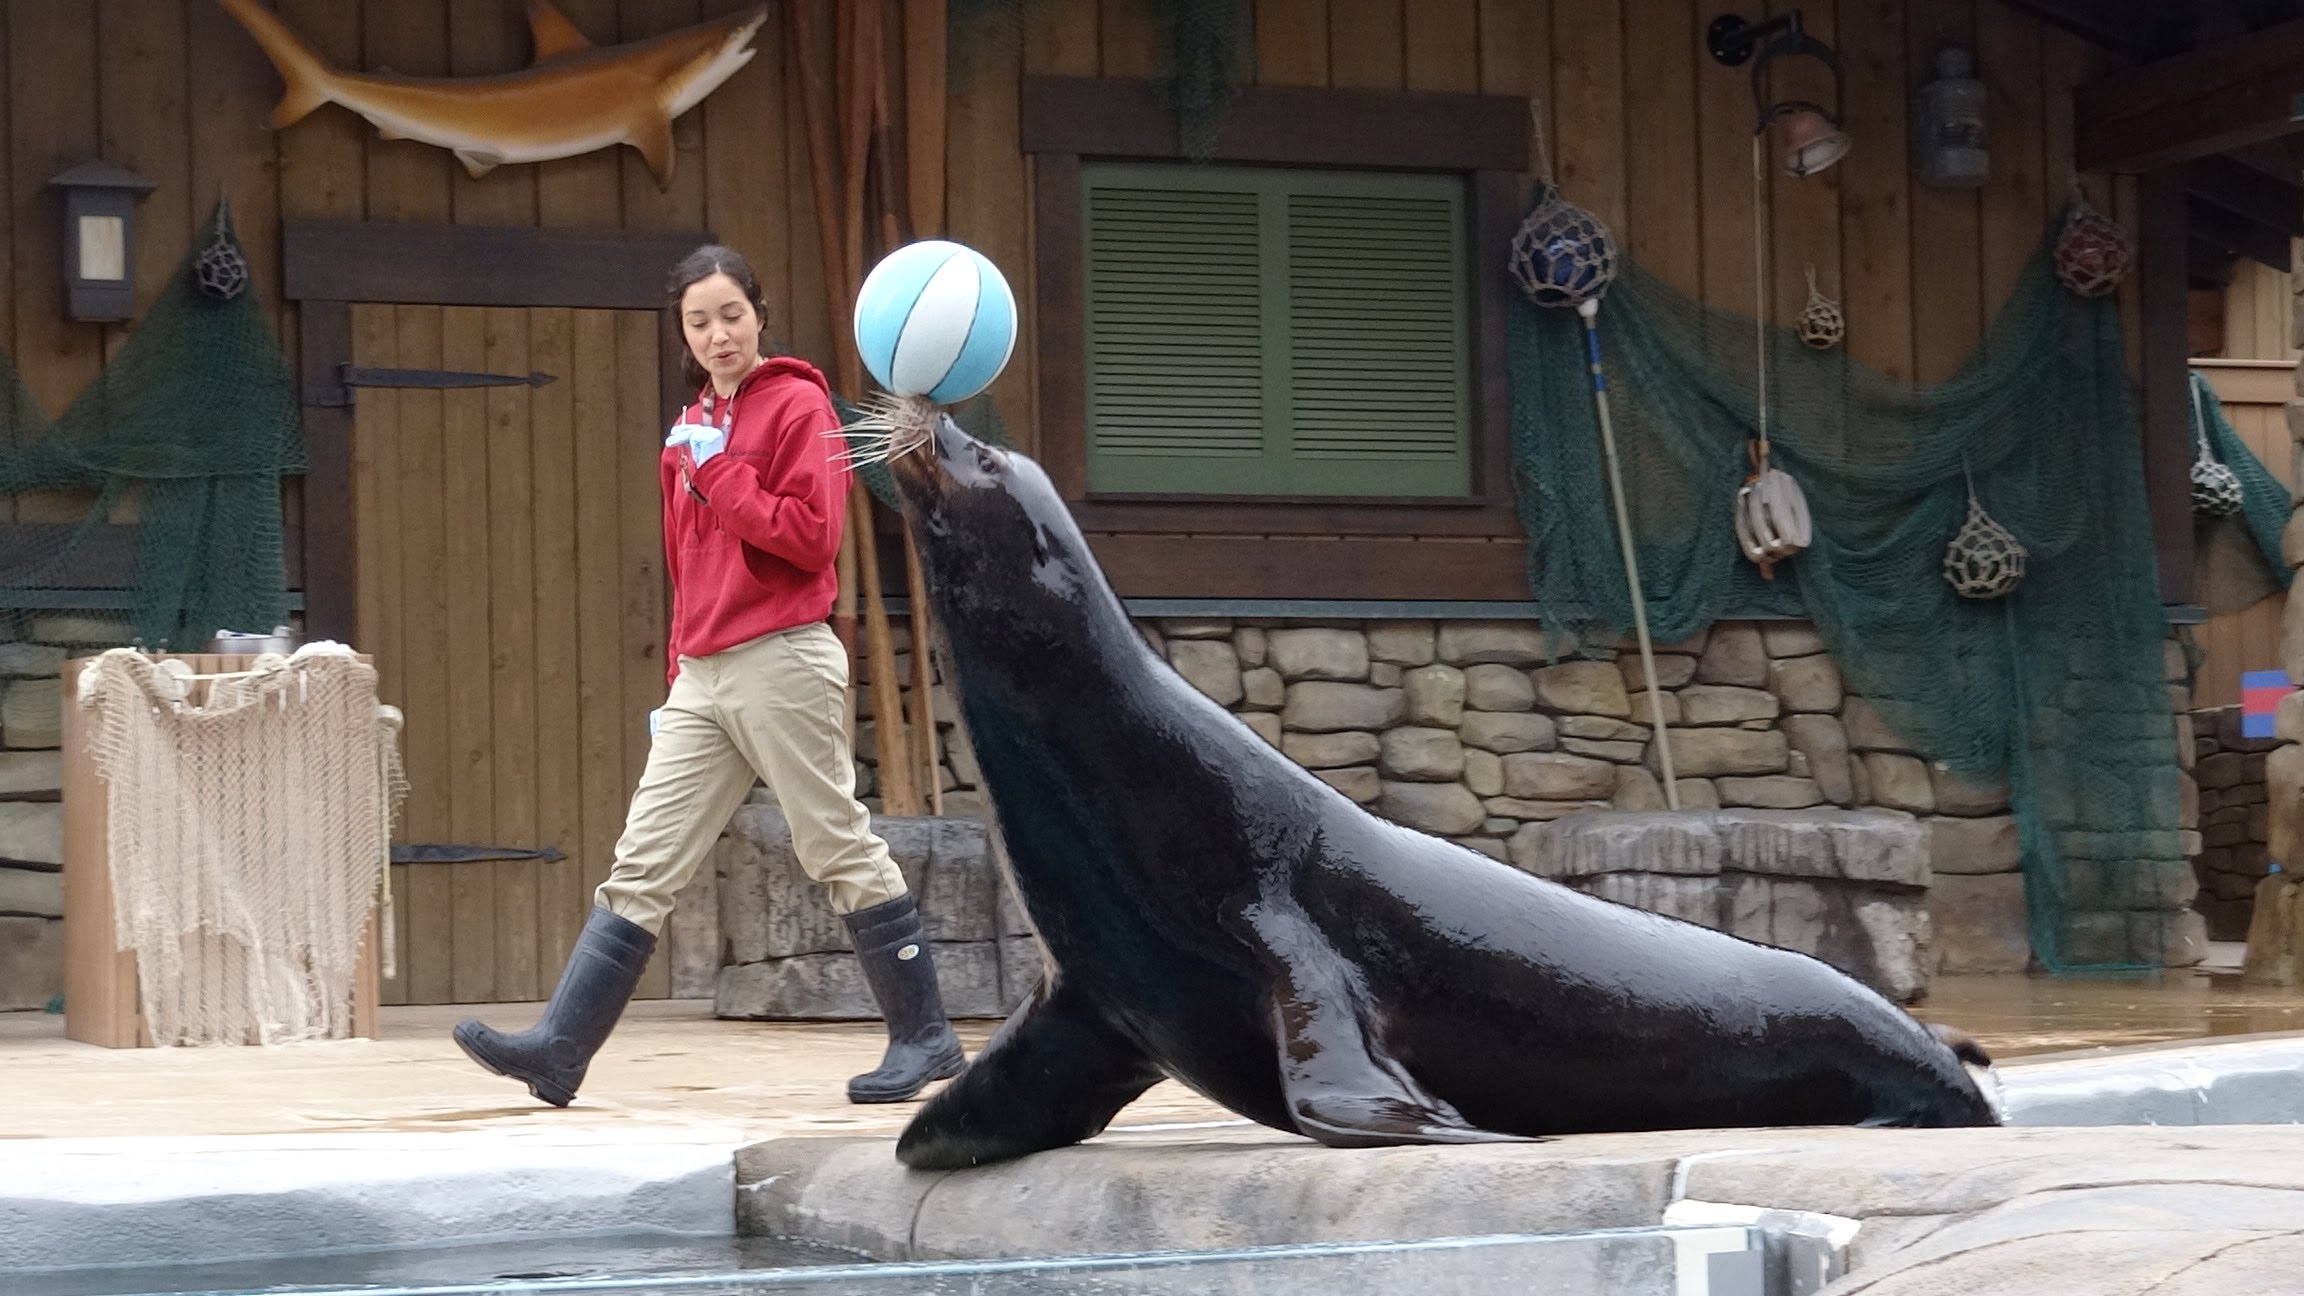 Sea Lion Show at Saint Louis Zoo, Missouri - YouTube